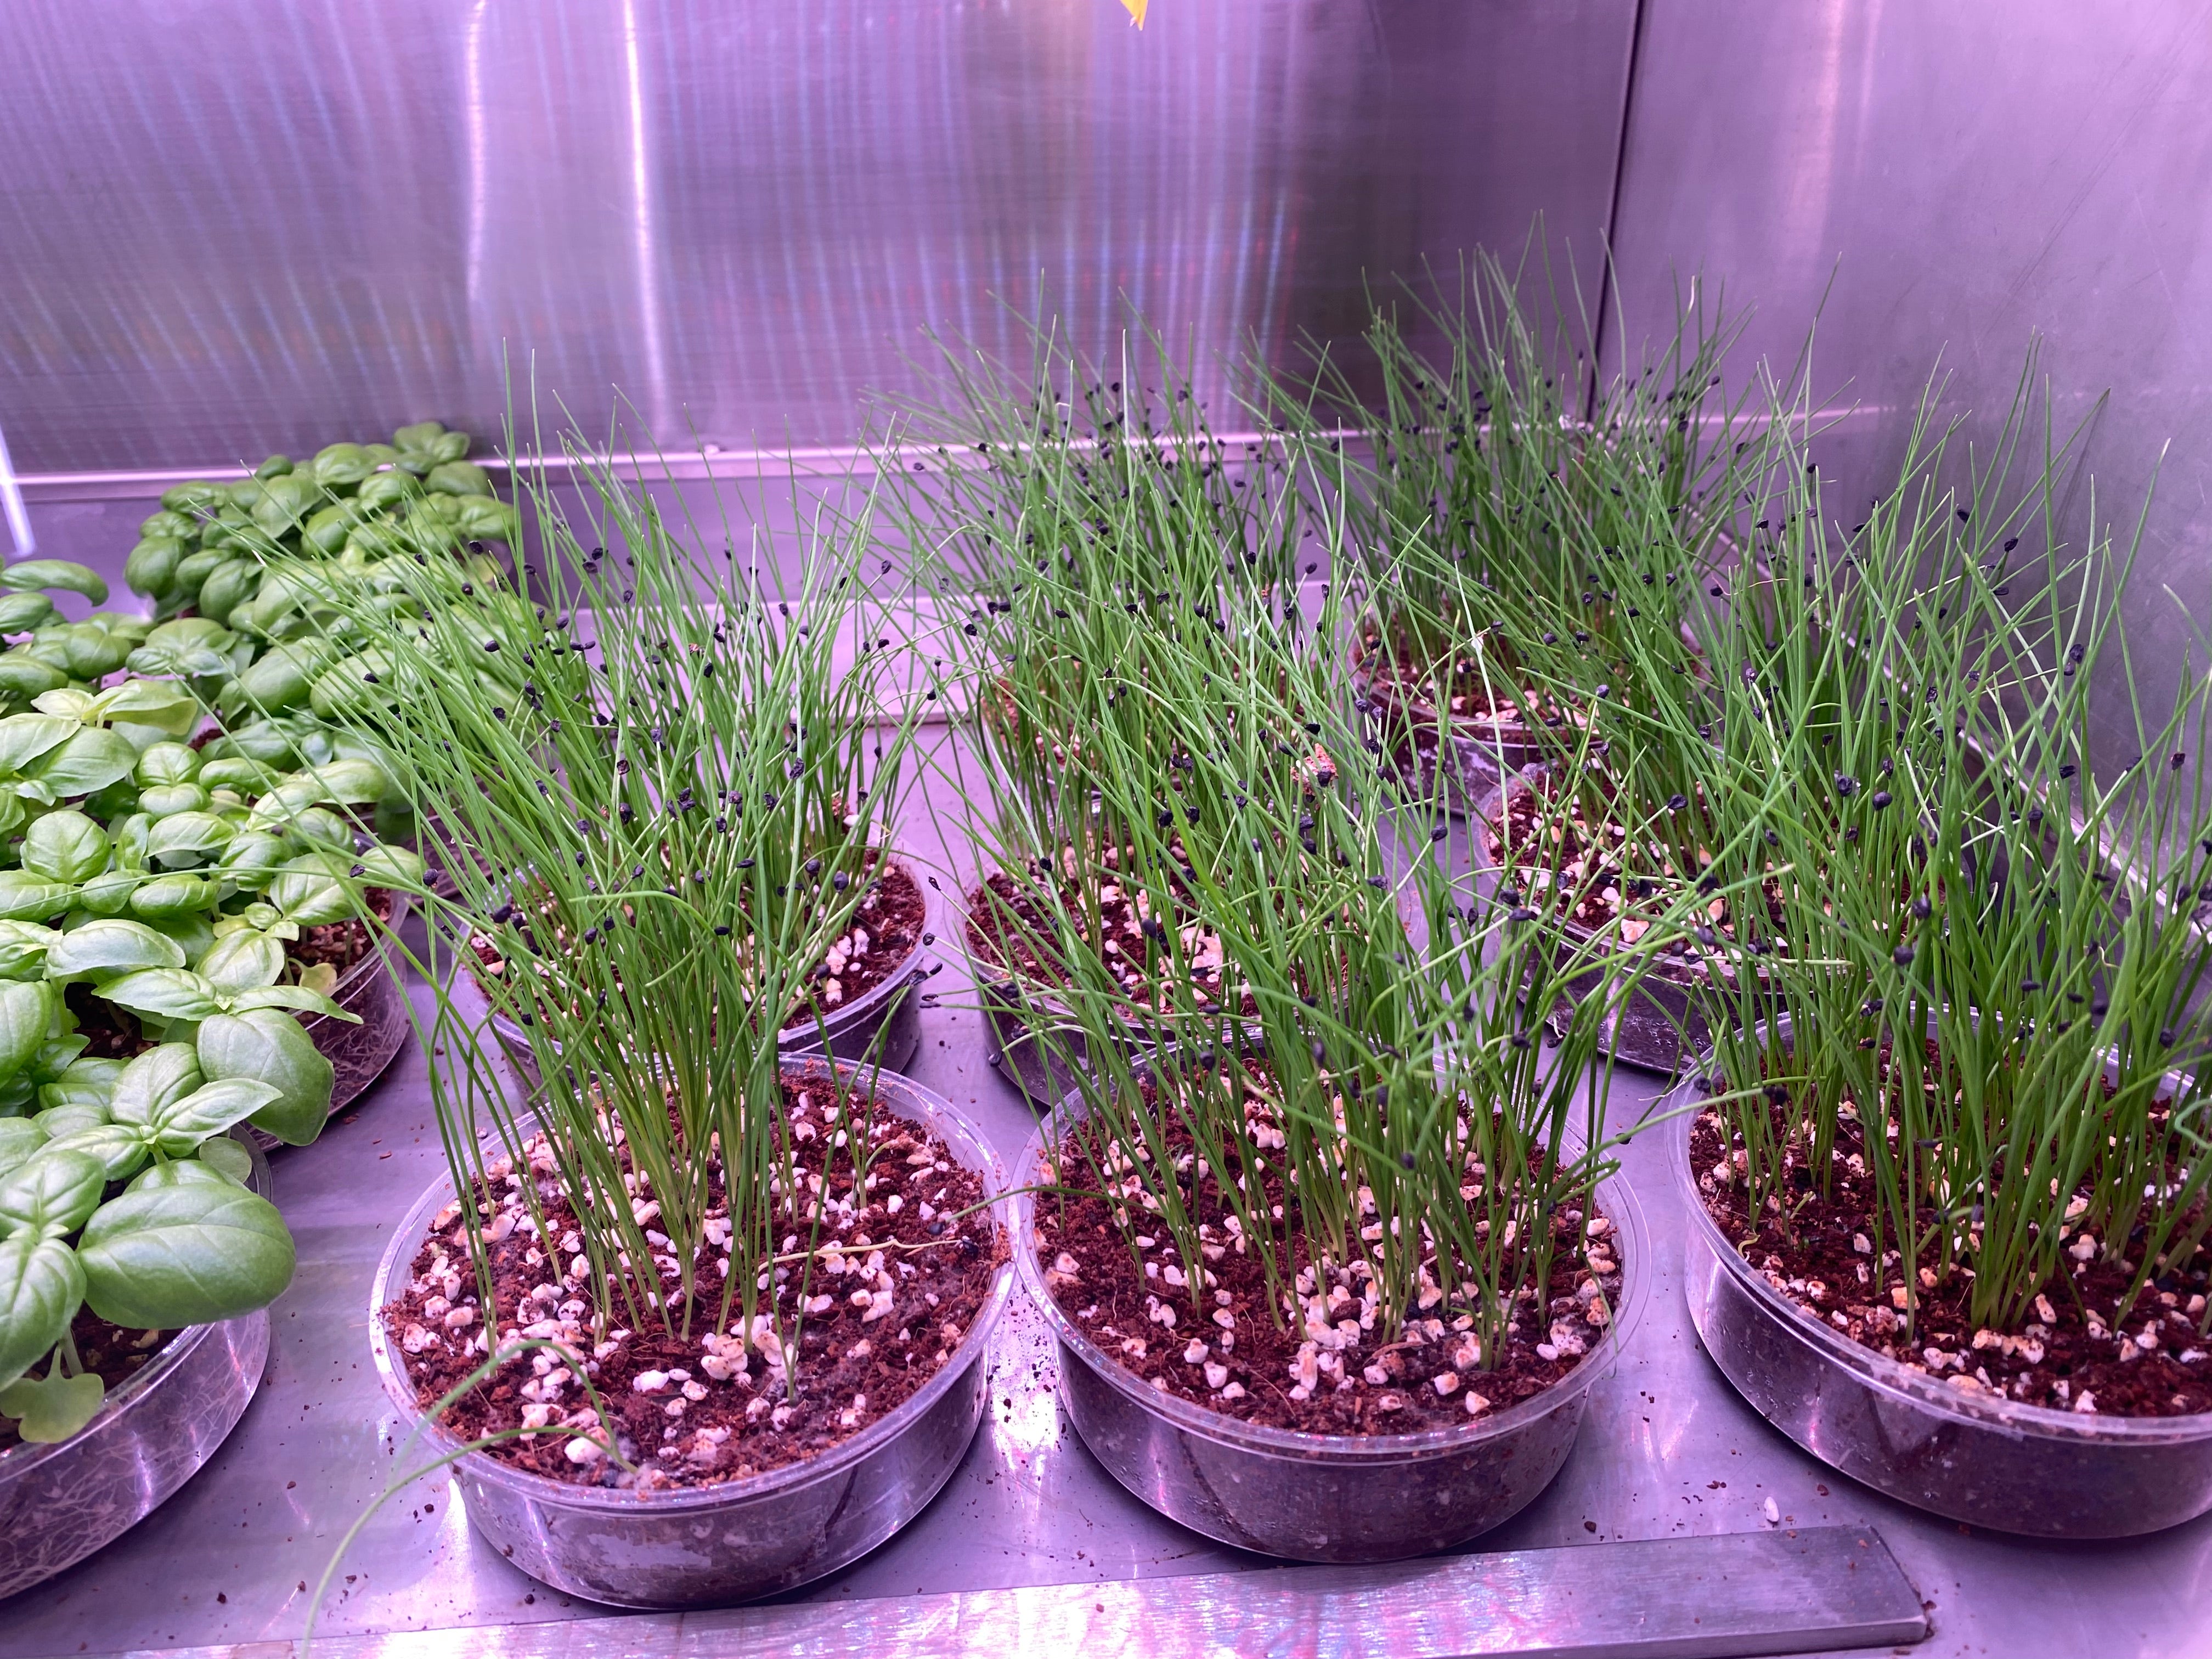 Herbs under grow light